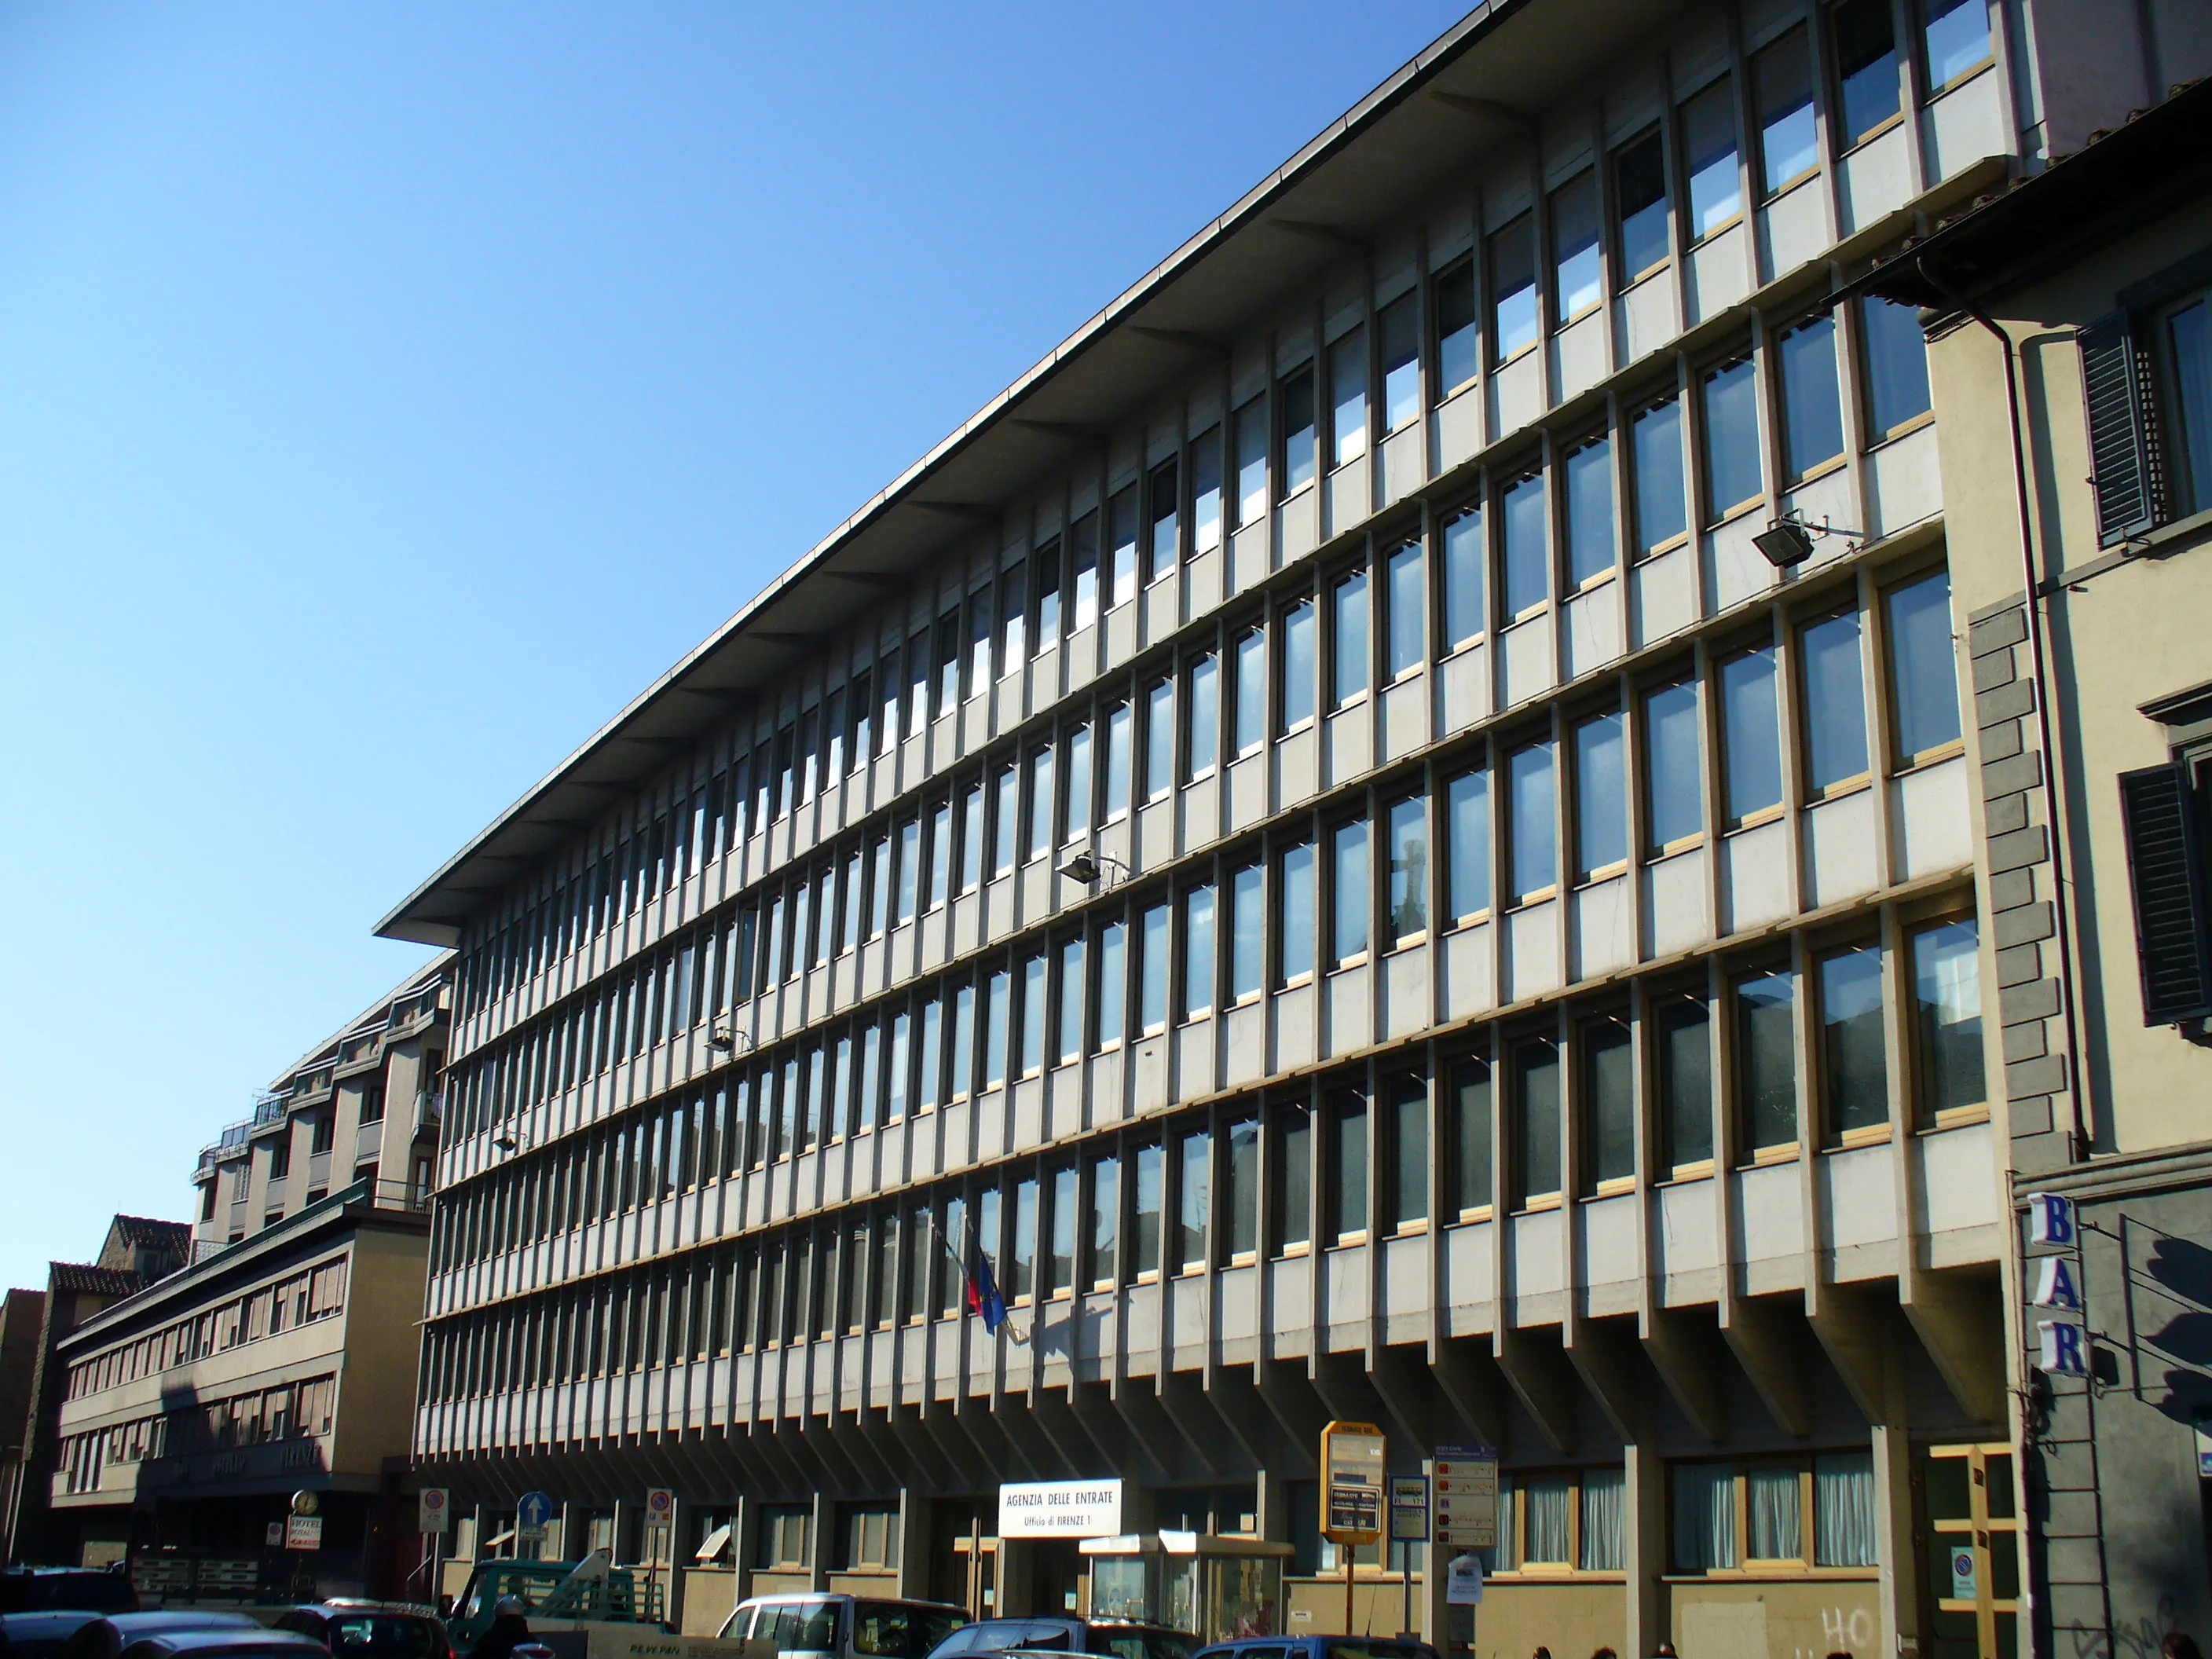 Agenzia delle entrate in Florence Ufficio 1